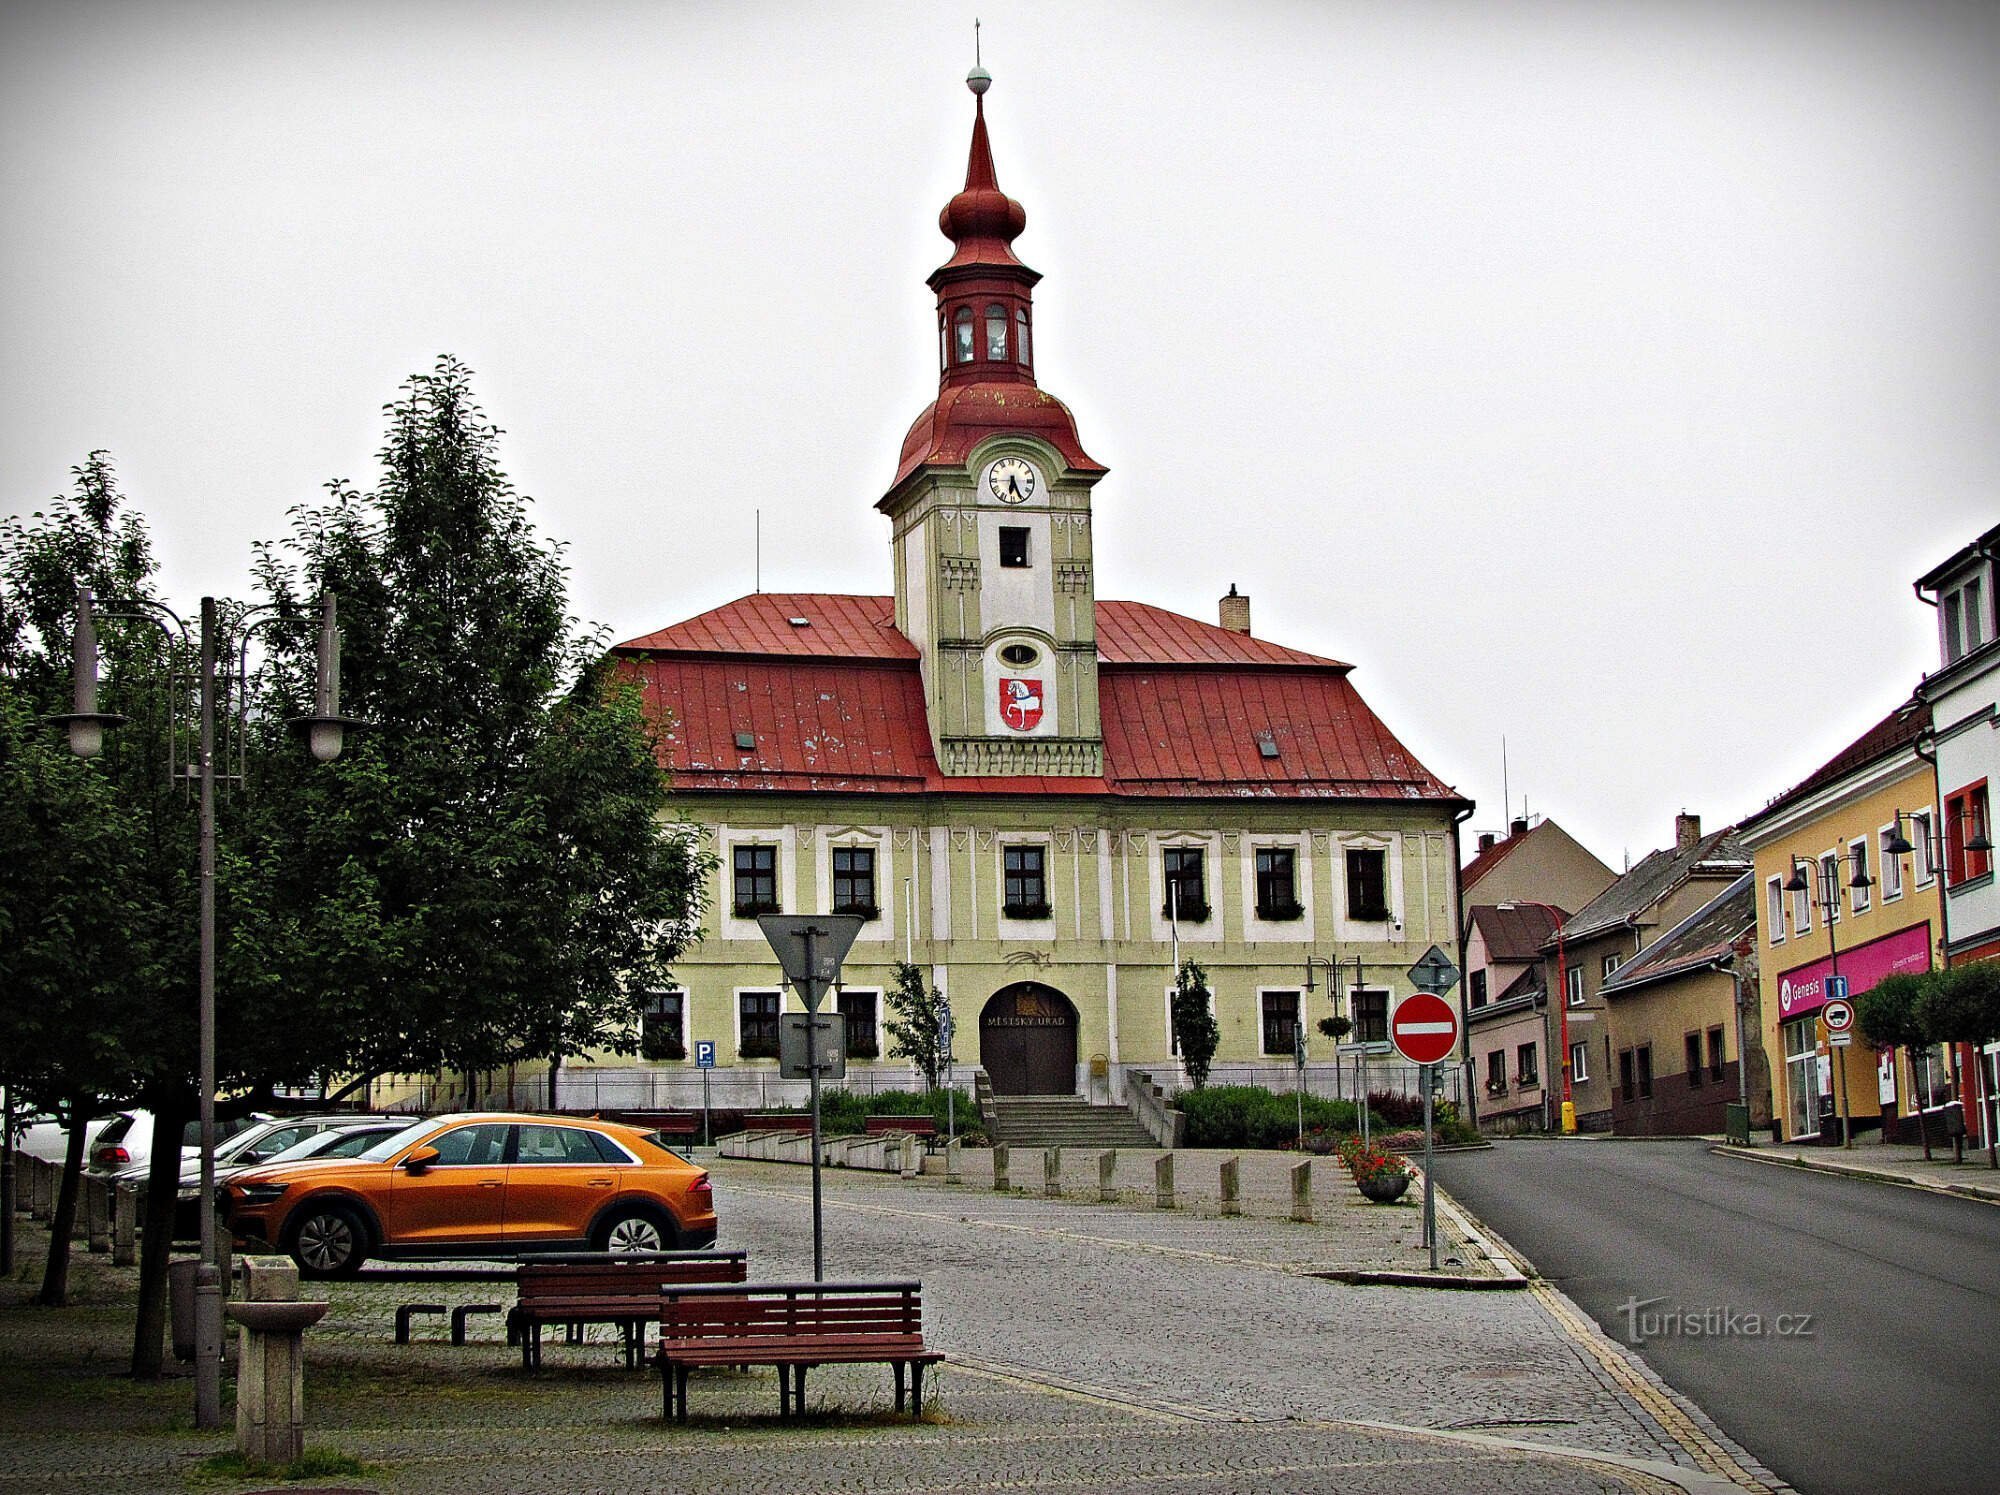 Глинсько - Poděbradovo náměstí